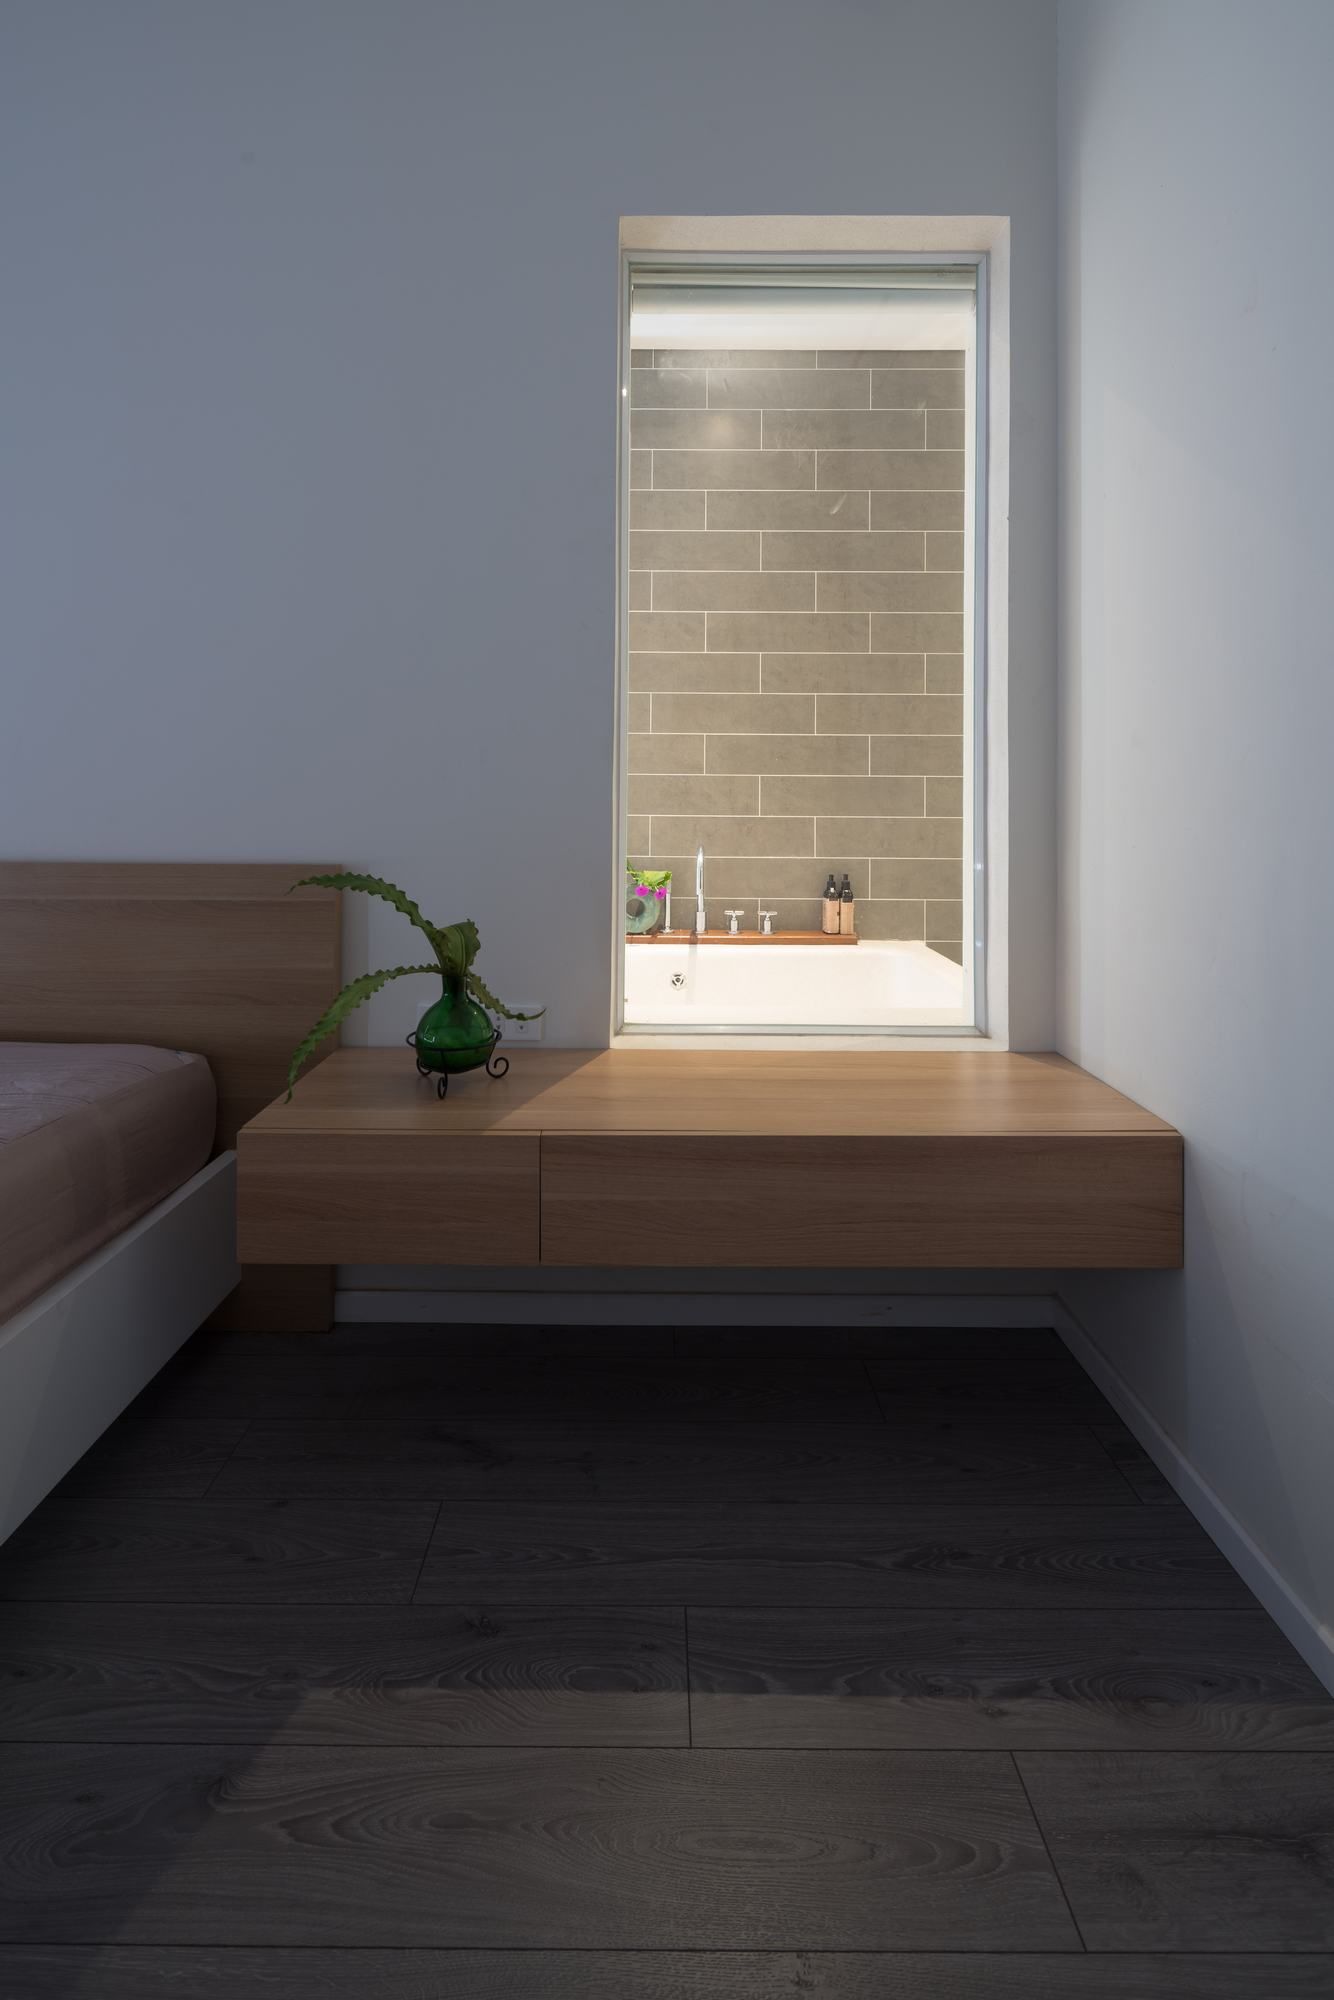 Hình ảnh một góc phòng ngủ với tab gỗ nhỏ cạnh cửa sổ kính nhìn ra phòng tắm